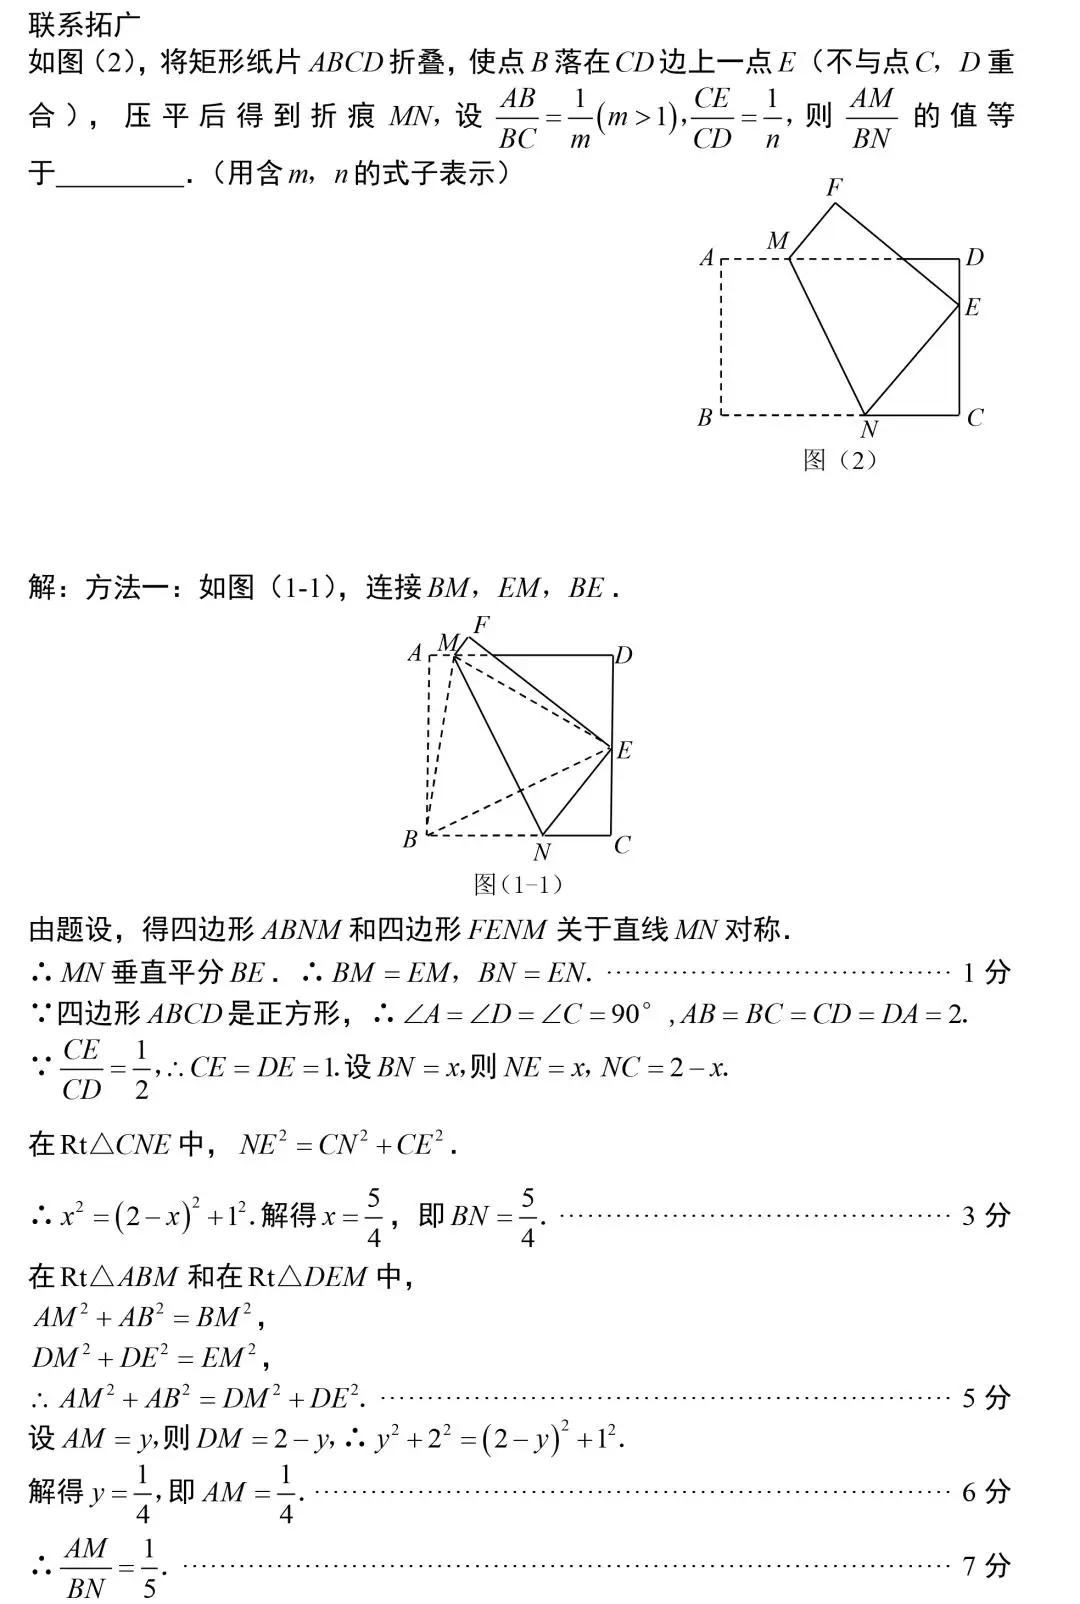 【中考数学】初中数学常考专题——最短路径+动点问题 第28张